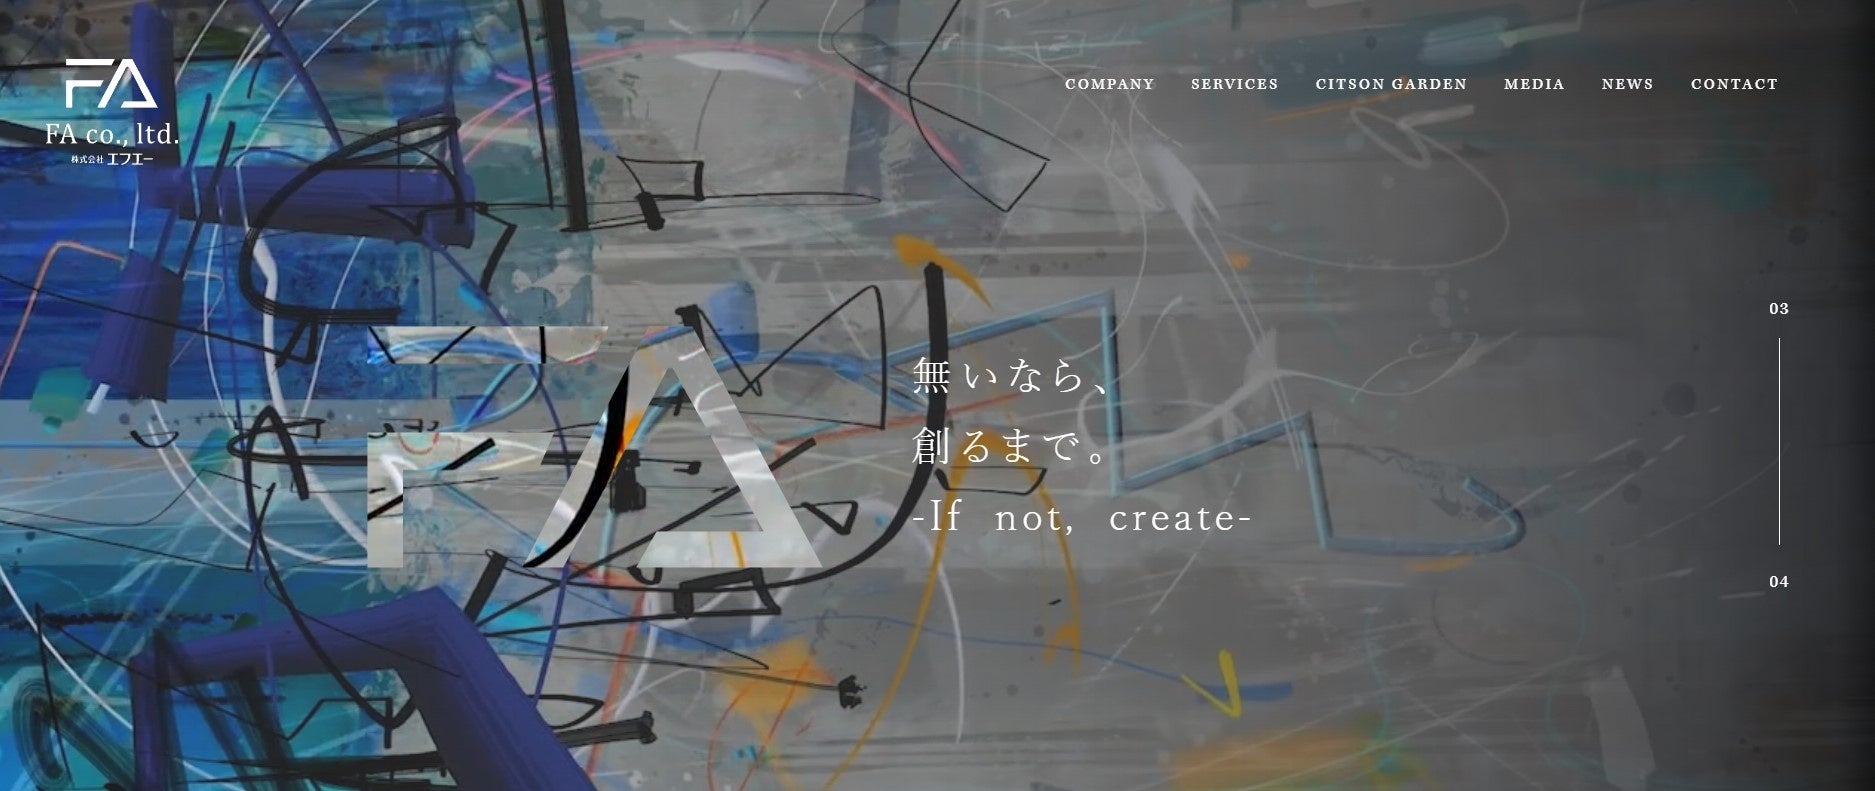 北海道札幌市の不動産業「エフエー」が新ホームページを公開